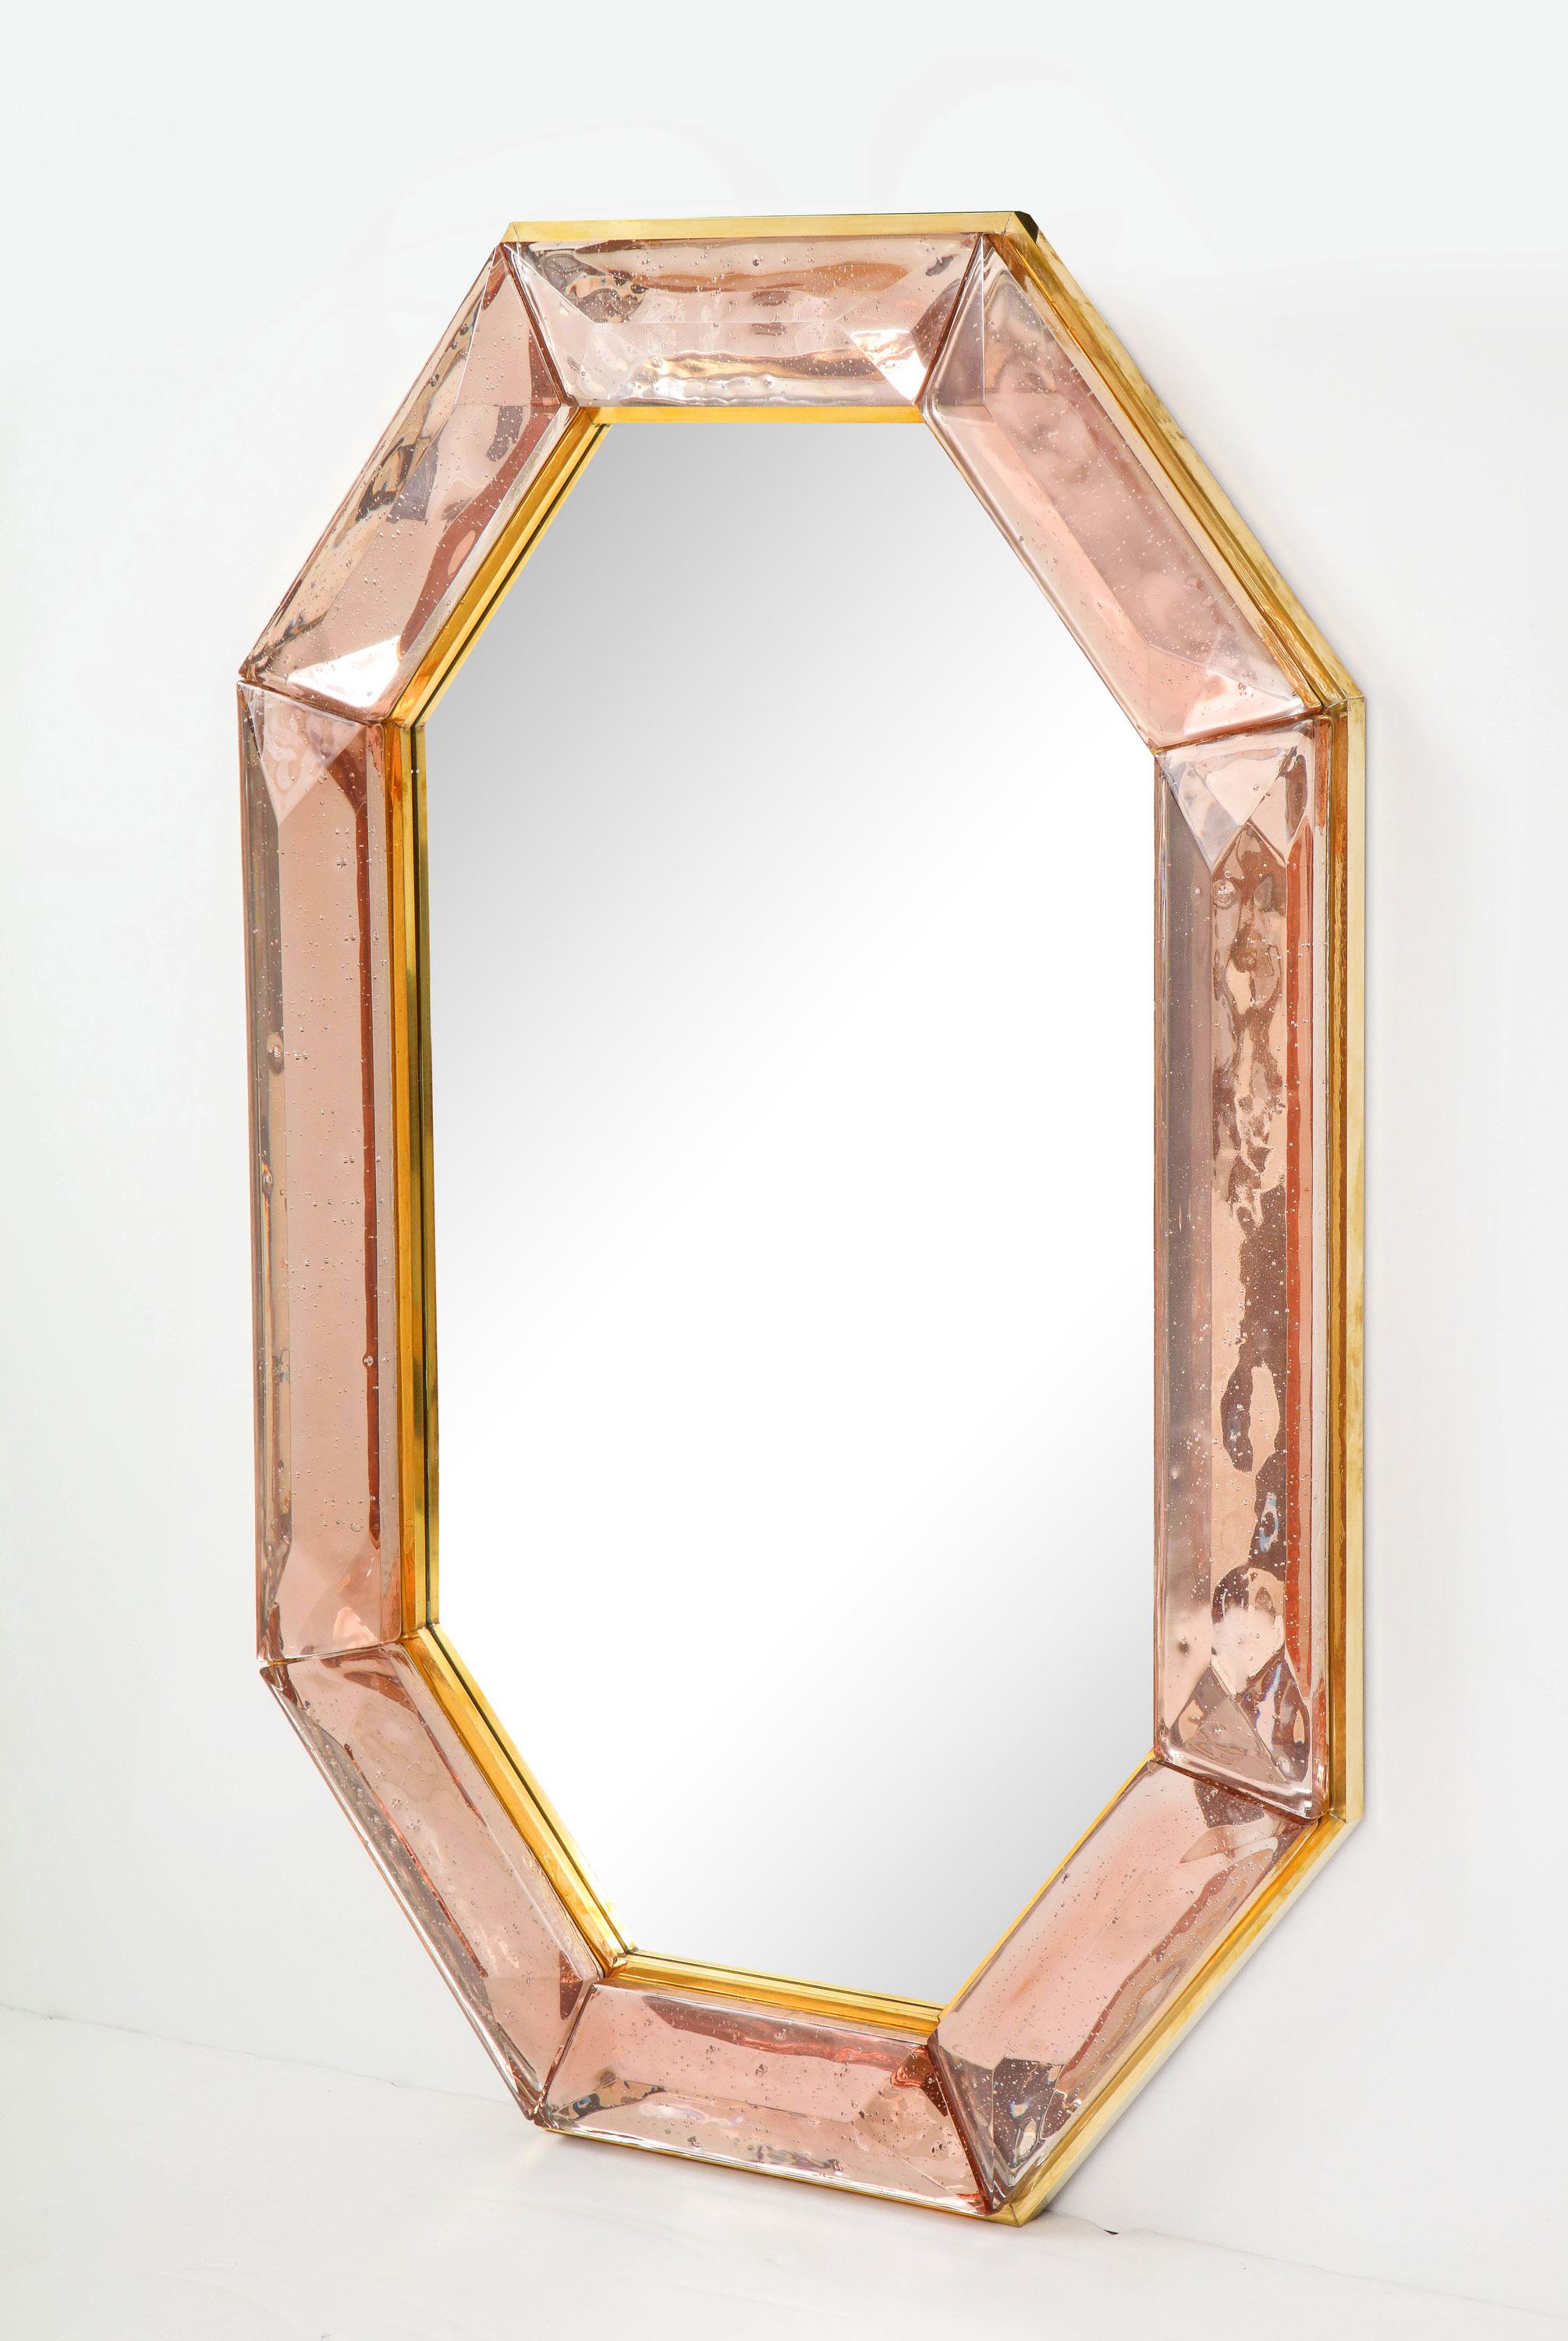 Ein Paar achteckige rosa Murano-Glasspiegel nach Maß, auf Lager
Lebhaftes und intensives Rosa des Glassteins mit natürlich vorkommenden Lufteinschlüssen
Hochglanzpoliertes Facettenmuster
Messing-Galerie rundherum
Jeder Spiegel ist ein einzigartiger